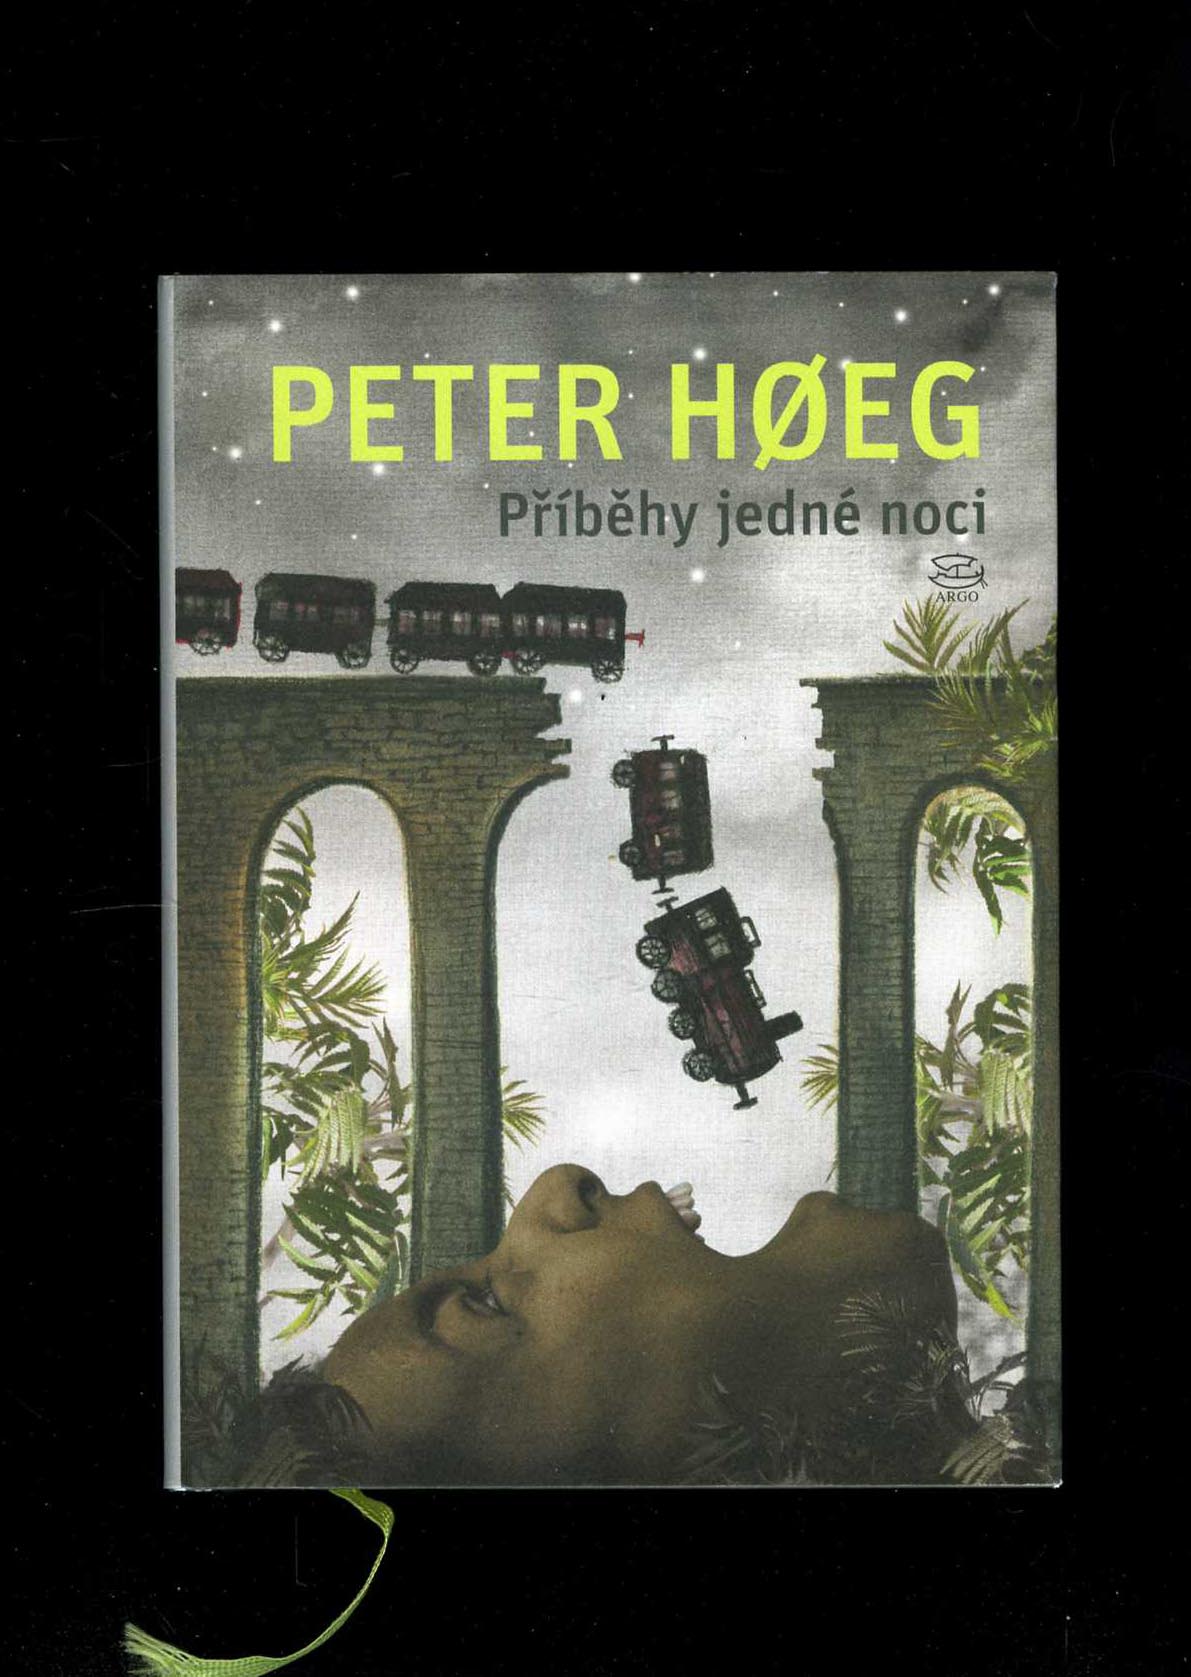 Příběhy jedné noci (Peter Hoeg)